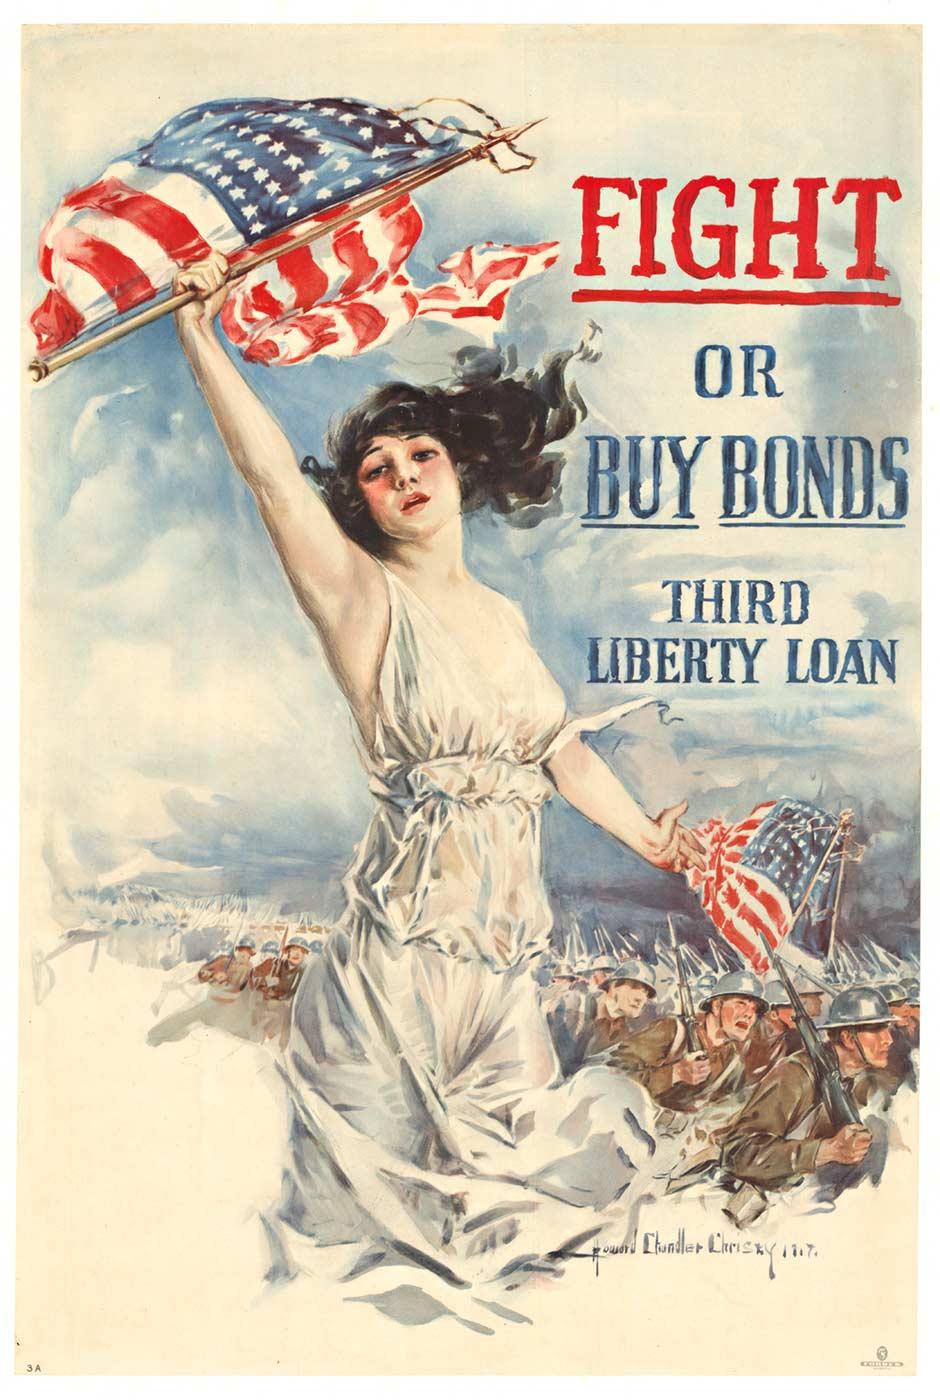 Landscape Print Howard Chandler Christy - Affiche originale d'époque "Fight or Buy Bonds, Third Liberty Loan" (Combattez ou achetez des obligations, troisième emprunt de la liberté)  1917